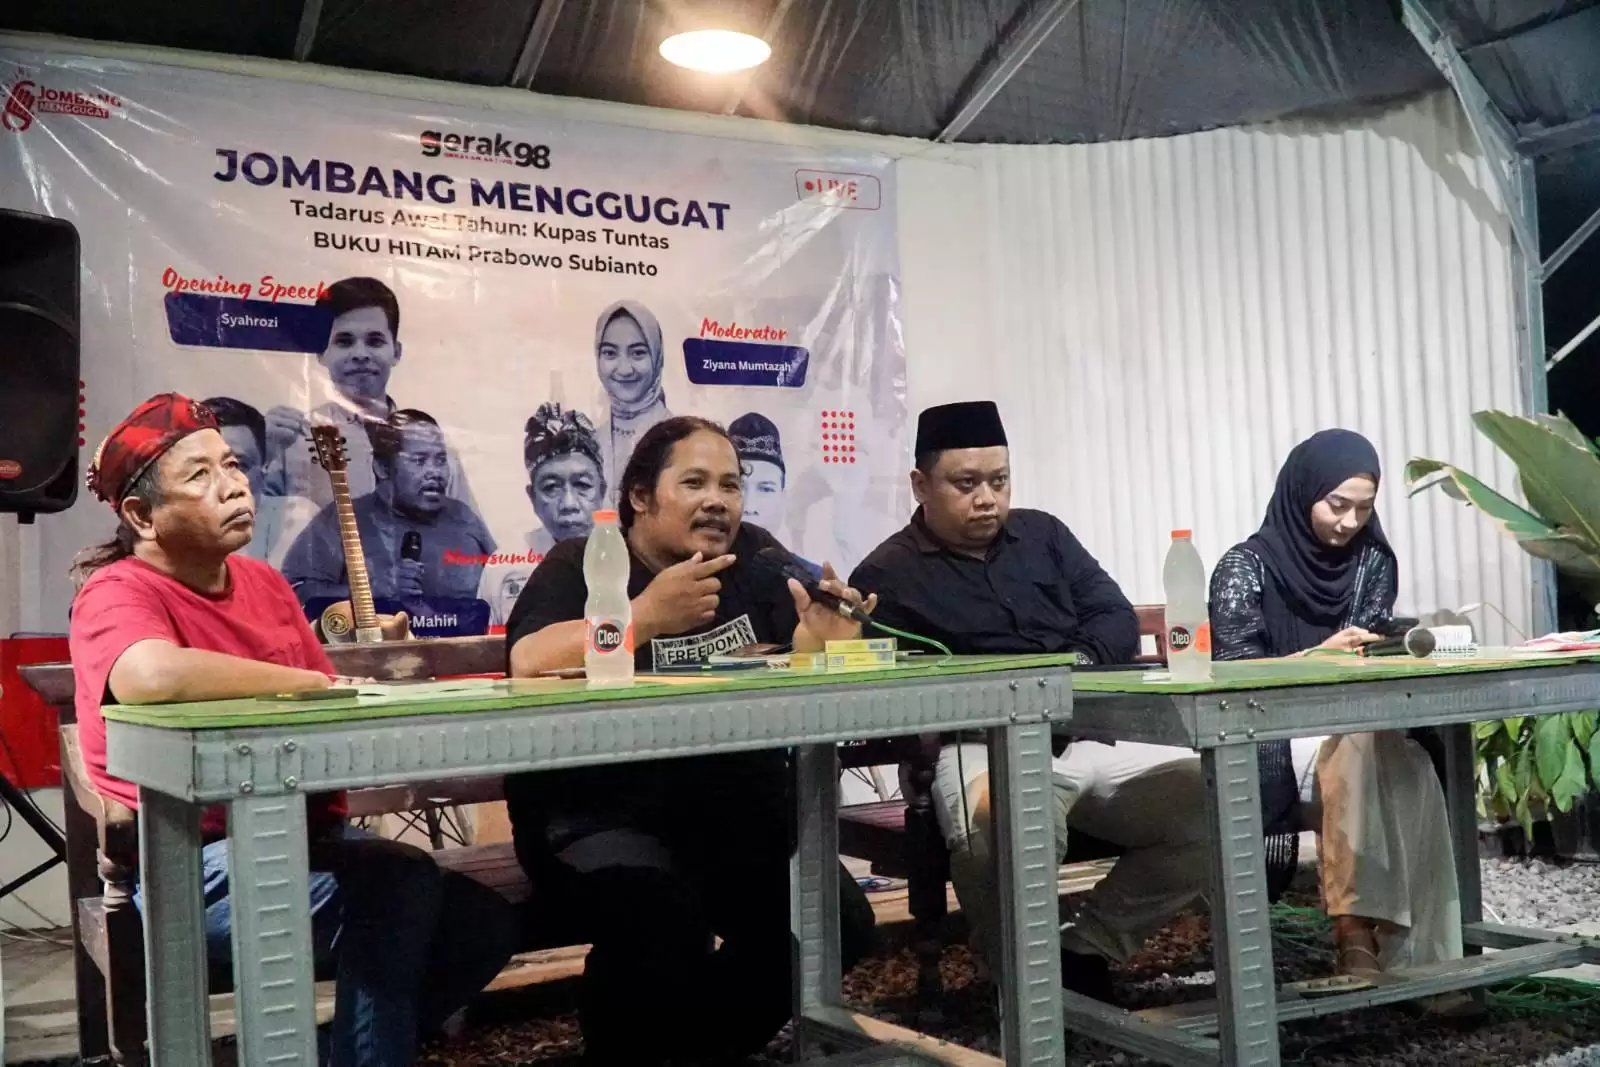 Sejumlah Kelompok Gerakan Jombang Menggugat bersama Gerak 98 menggelar tadarus awal tahun Kupas Tuntas Buku Hitam Prabowo Subianto (Foto: Ist)